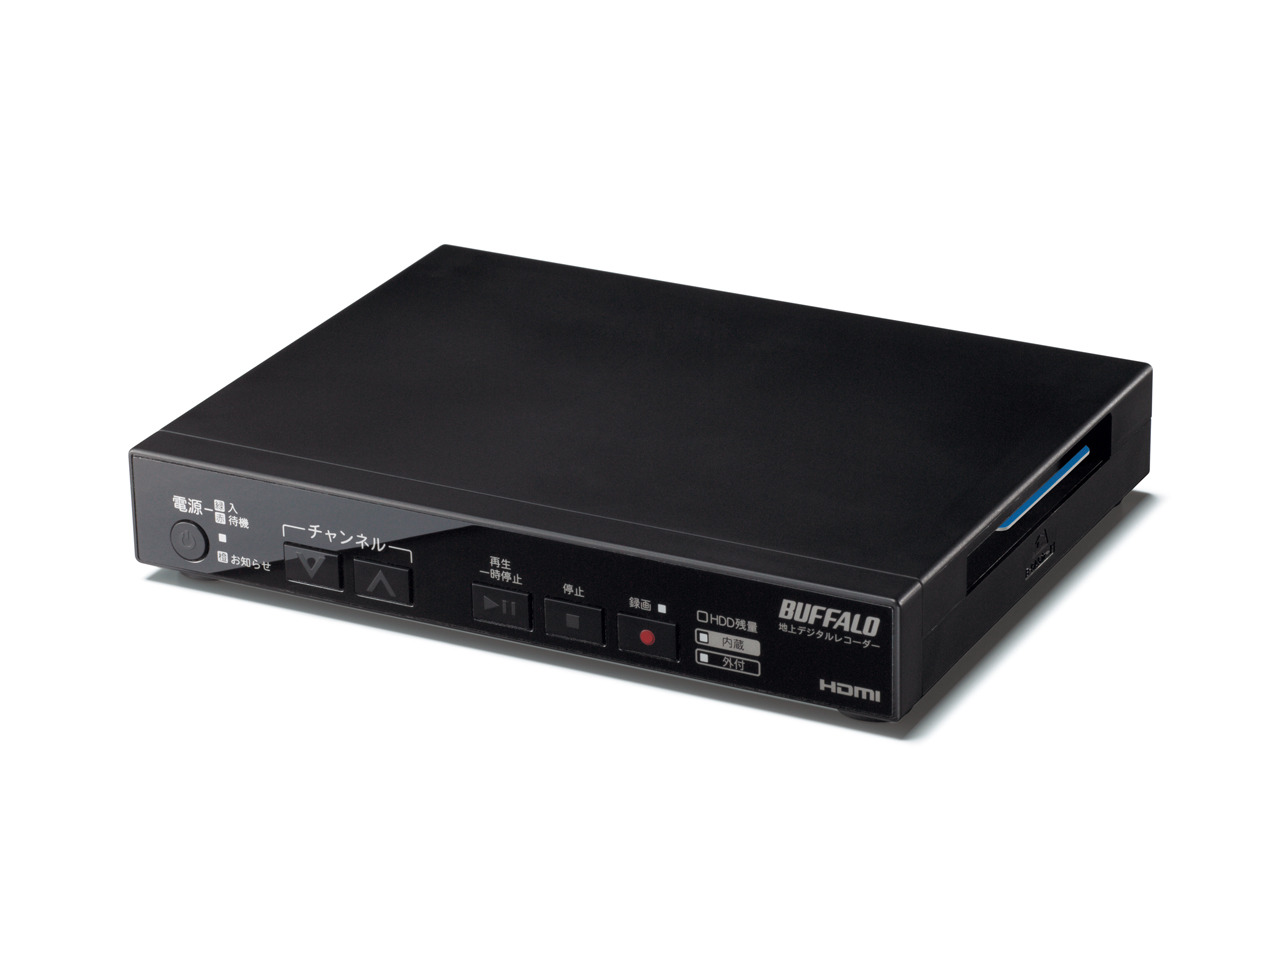 BUFFALO コンパクト HDDレコーダー DVR-1C2 500G - 映像機器